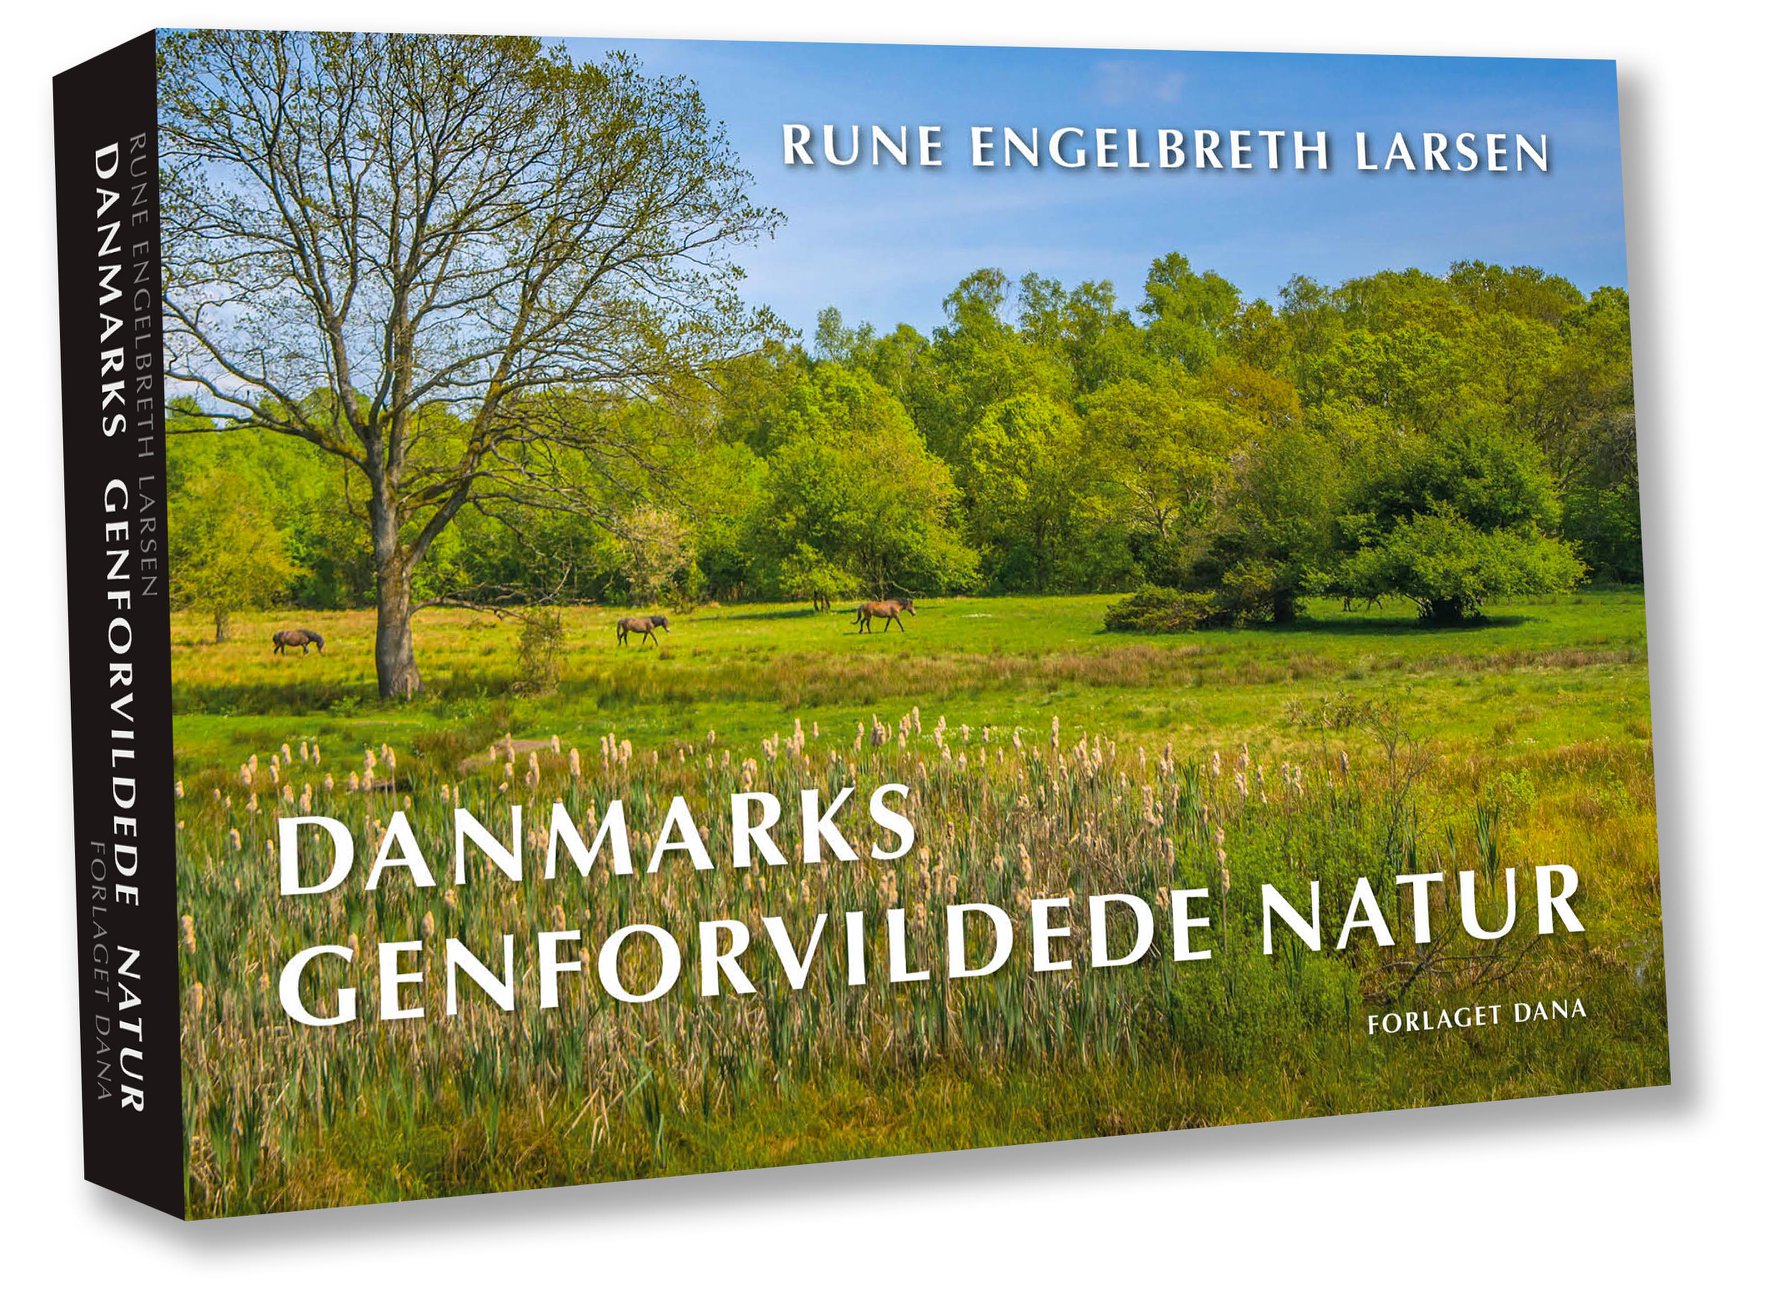 Danmarks genforvildede natur (forside)